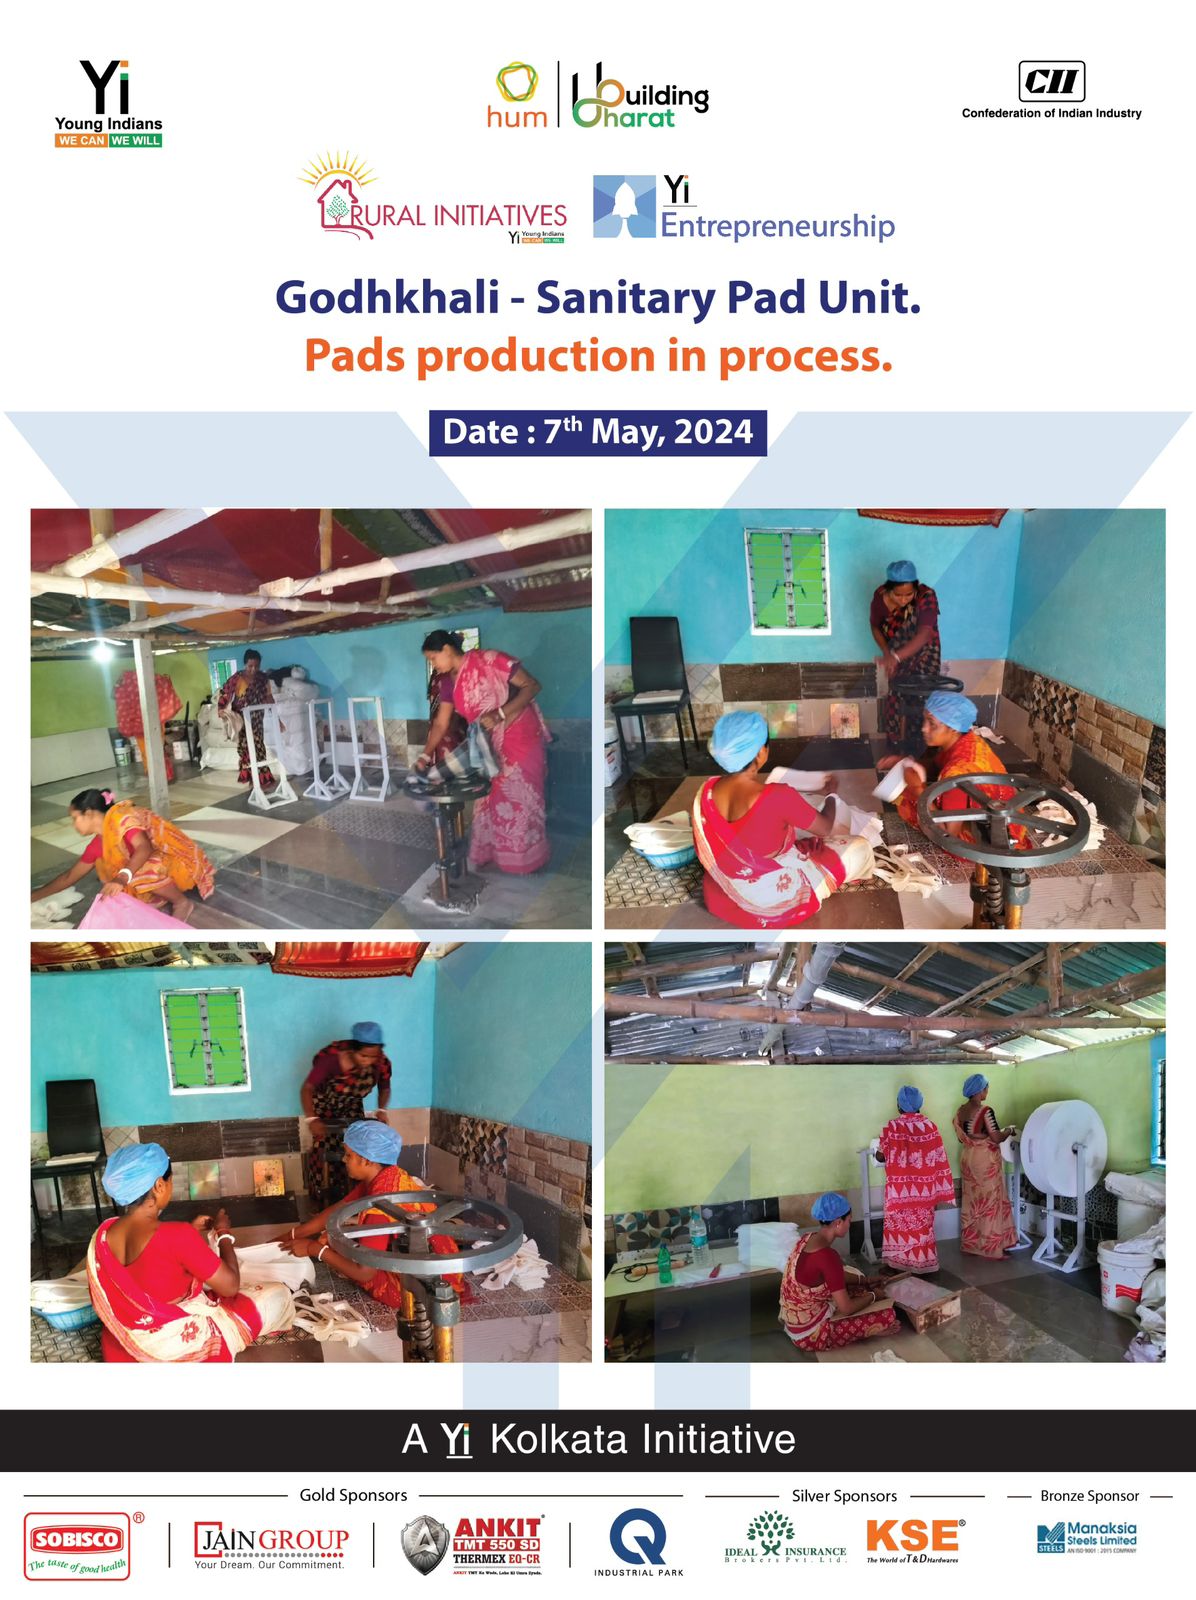 Yi24 | Godhkhali - Sanitary Pad Unit - Pads production in process